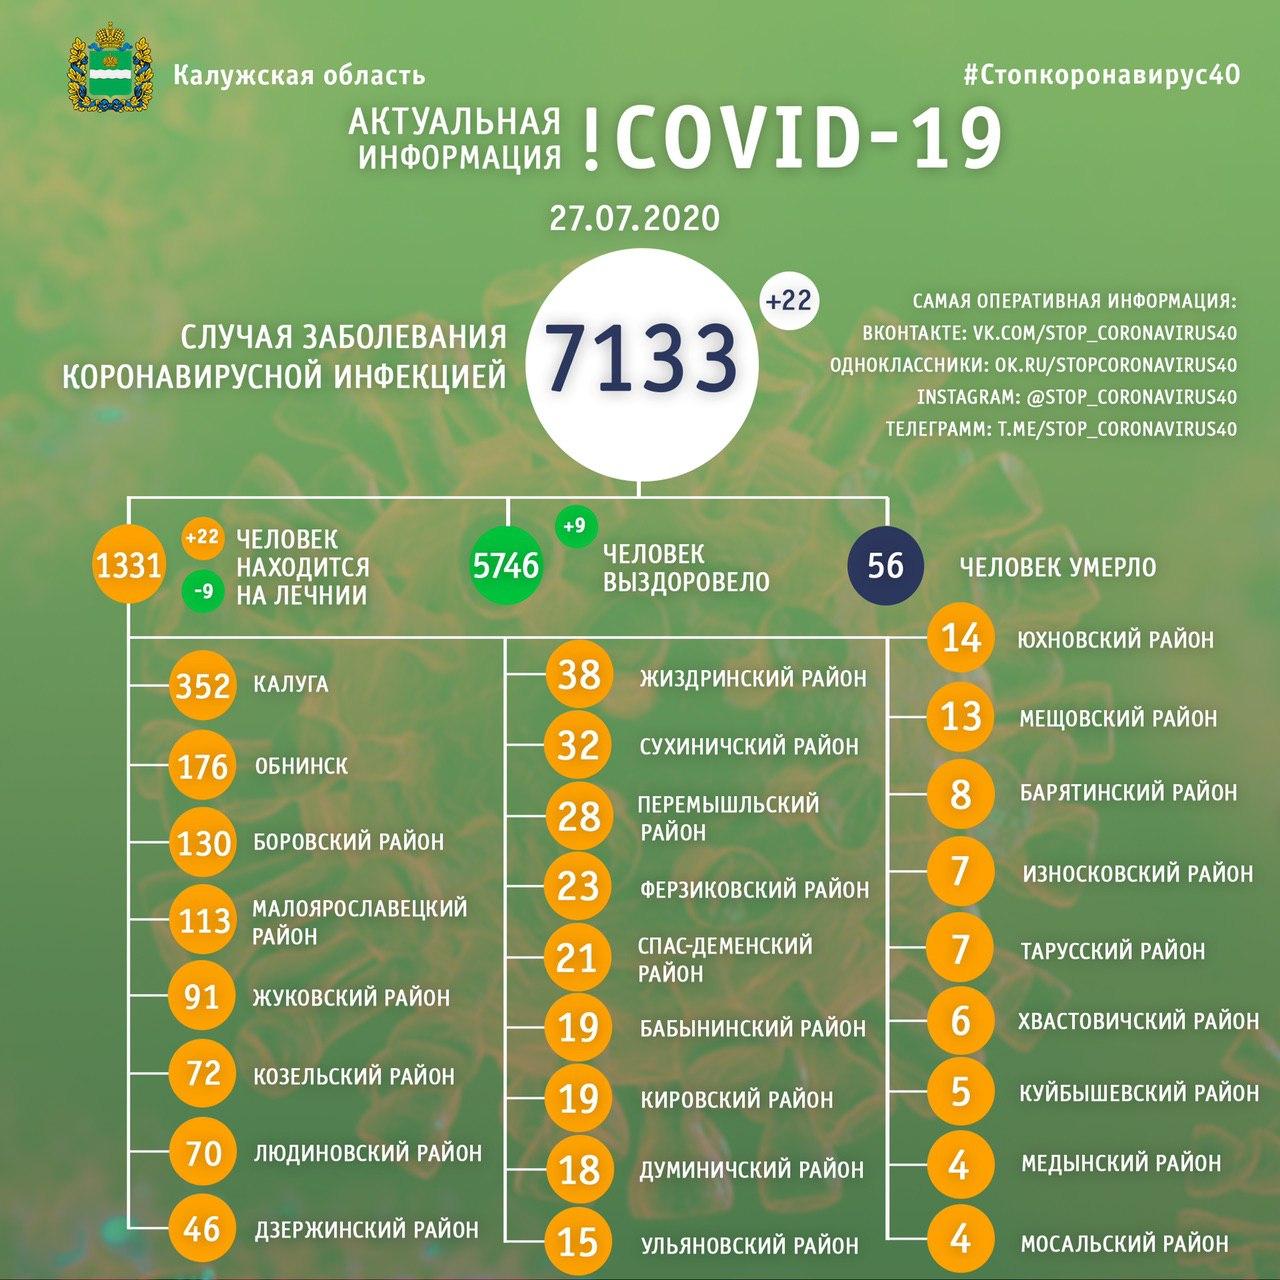 Официальные данные от регионального оперативного штаба Калужской области на 27 июля 2020 года.